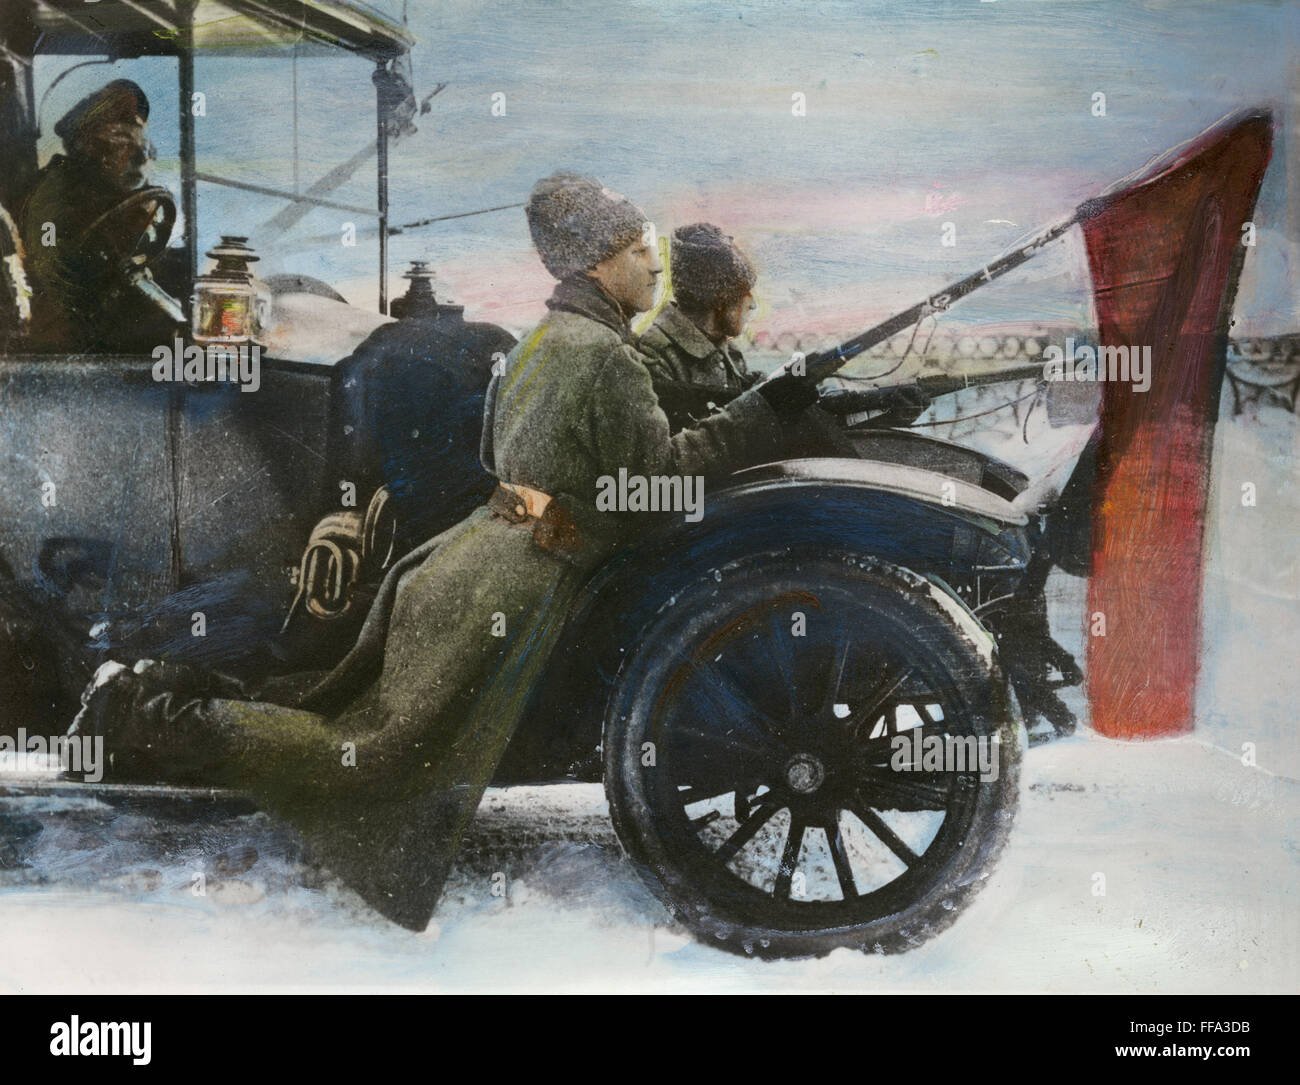 RUSSISCHE REVOLUTION 1917. /nPro-Bolshevik Soldaten, mit roten Fahnen befestigt die Bajonette patrouillieren in den Straßen von Petrograd im März 1917, von einem Auto aus der provisorischen Regierung beschlagnahmt. Stockfoto